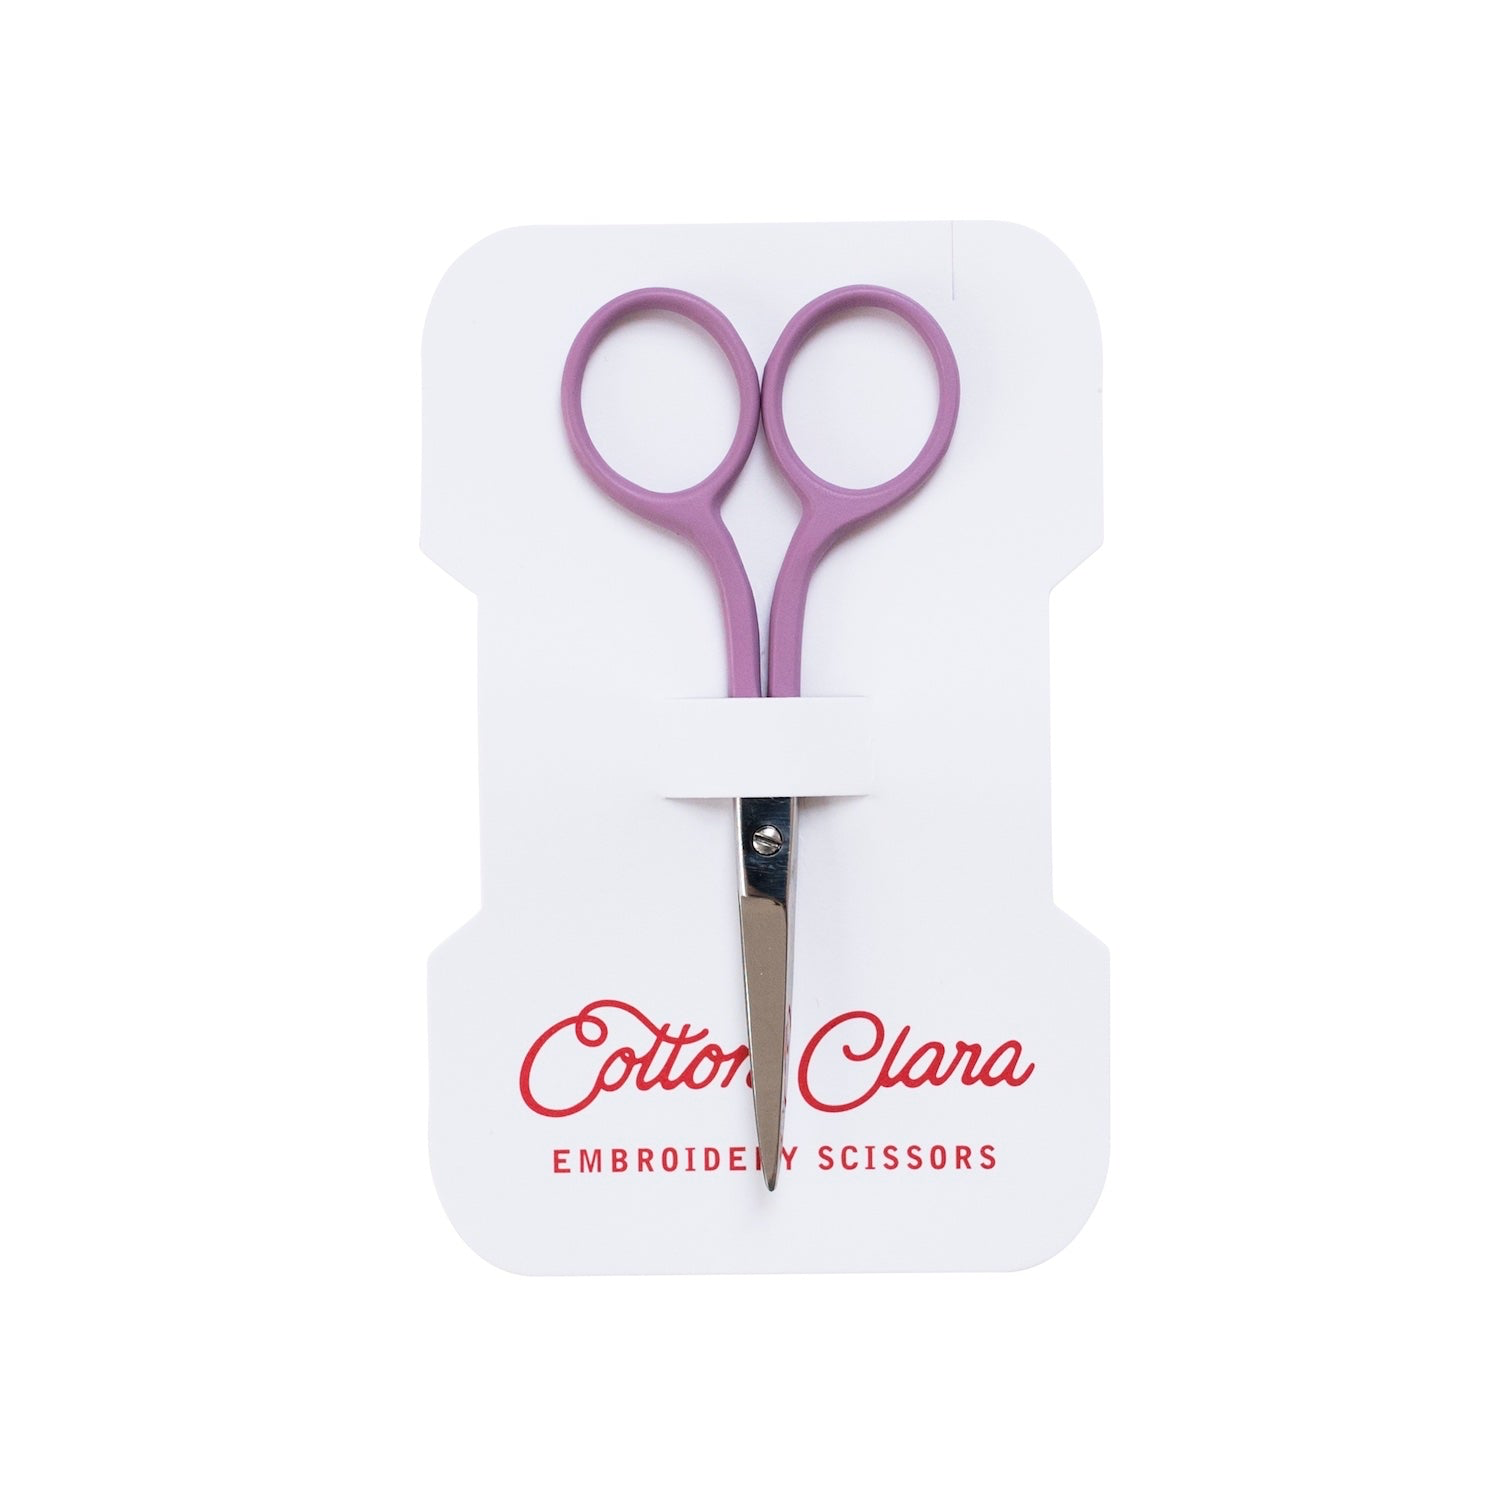 Cotton Clara - COCL Cotton Clara - Embroidery Scissors, Lilac